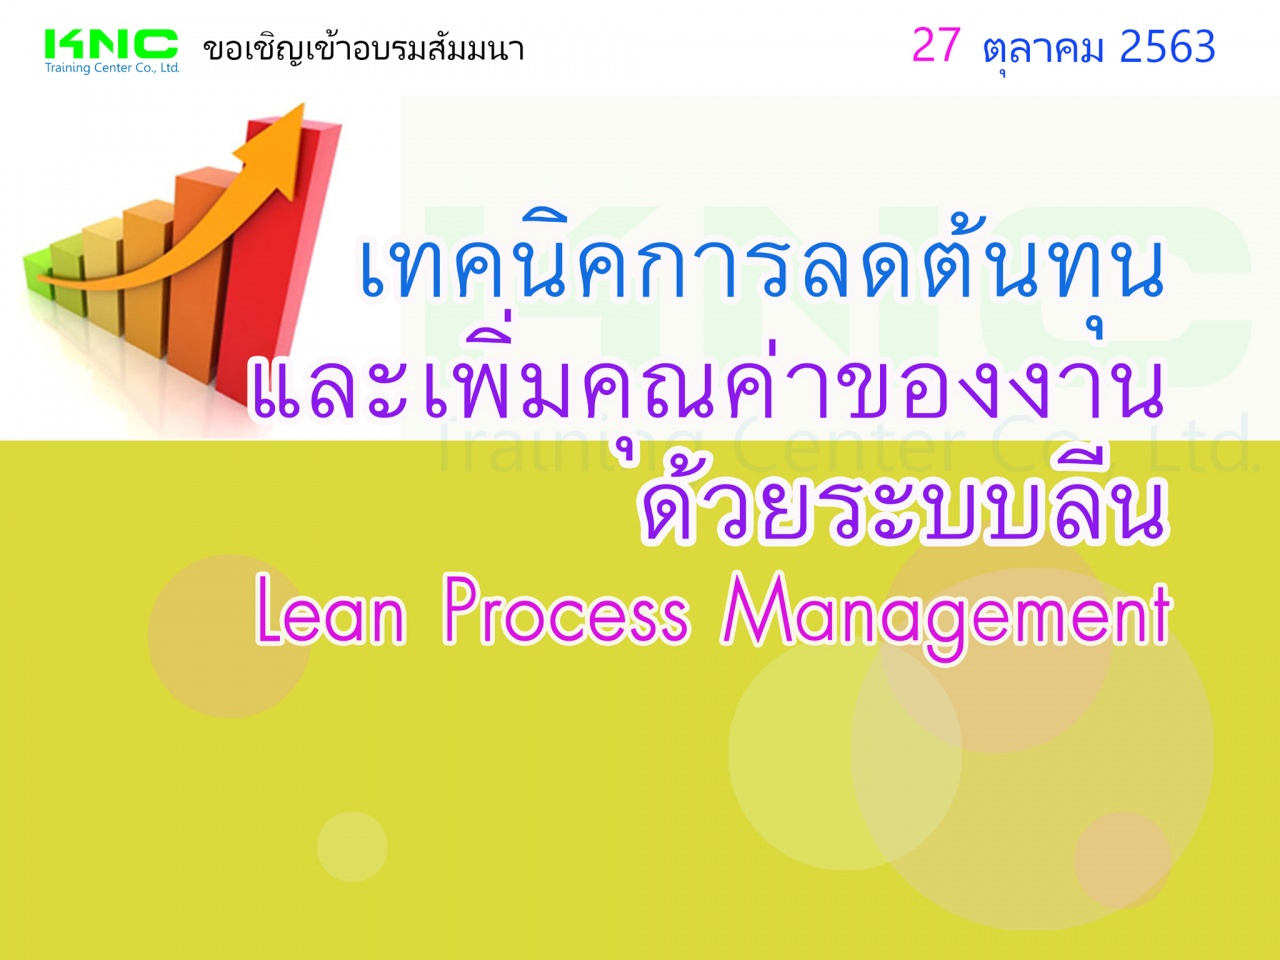 เทคนิคการลดต้นทุนและเพิ่มคุณค่าของงานด้วยระบบลีน (Lean Process Management)